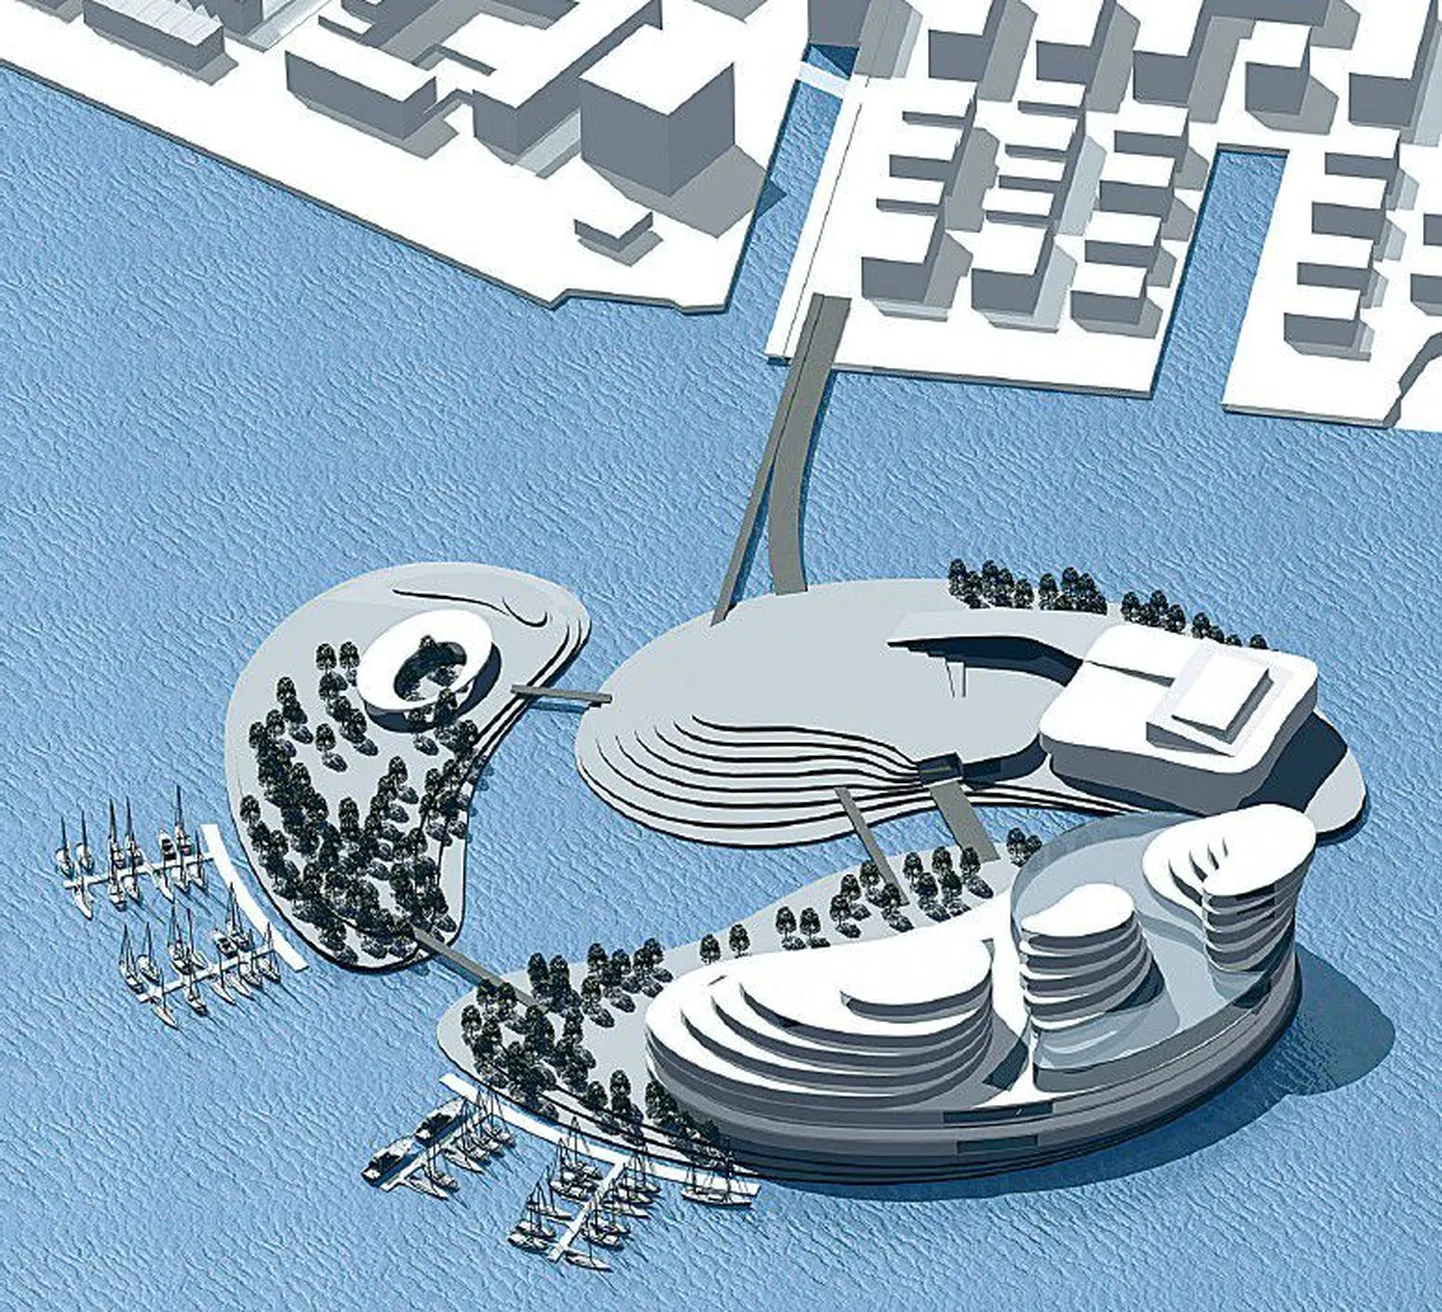 Kasiino- ja kahe teise saare mahulise väljanägemise koostas ARS Projekt, detailpaneeringu eskiisi K-Projekt.
Hoonete arhitektuurse lahenduse saamiseks tuleb korraldada rahvusvaheline konkurss.